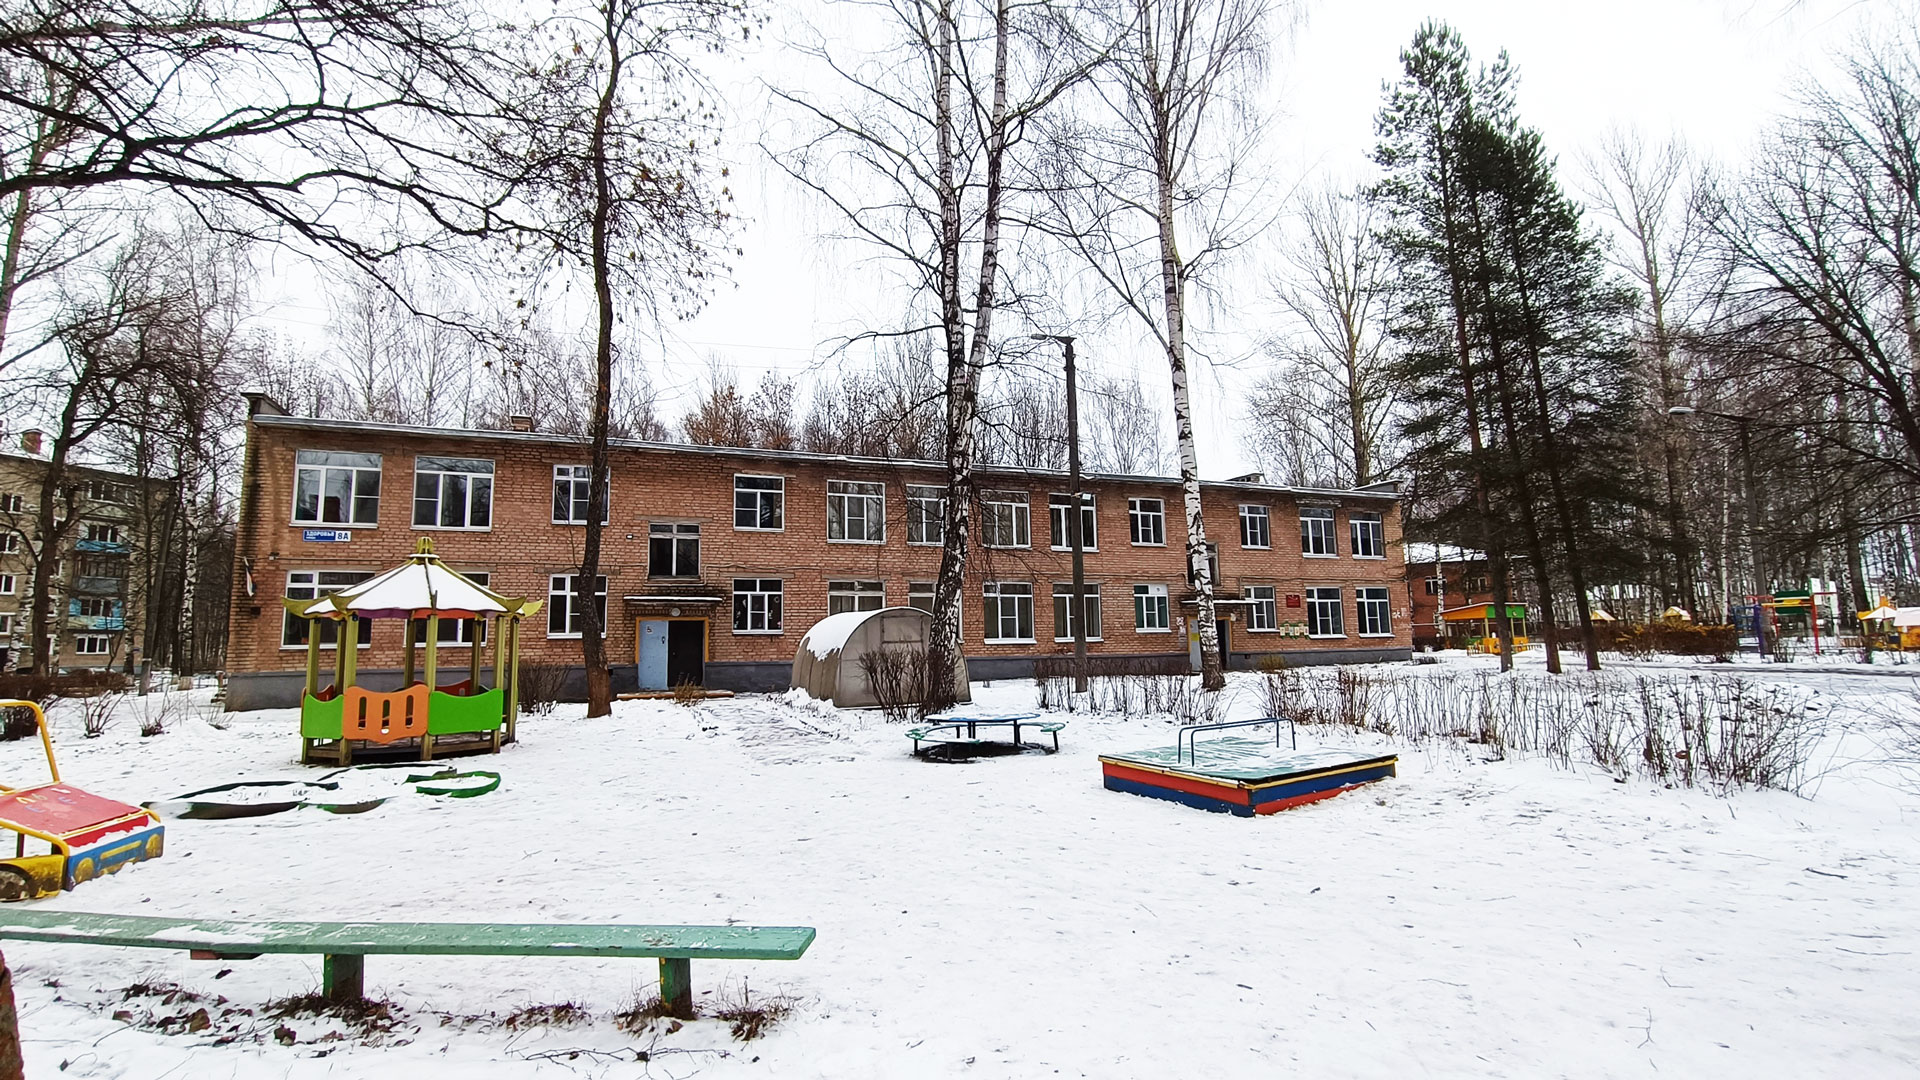 Детский сад 104 Ярославль: общий вид здания и территории (ул. Здоровья, 8а).